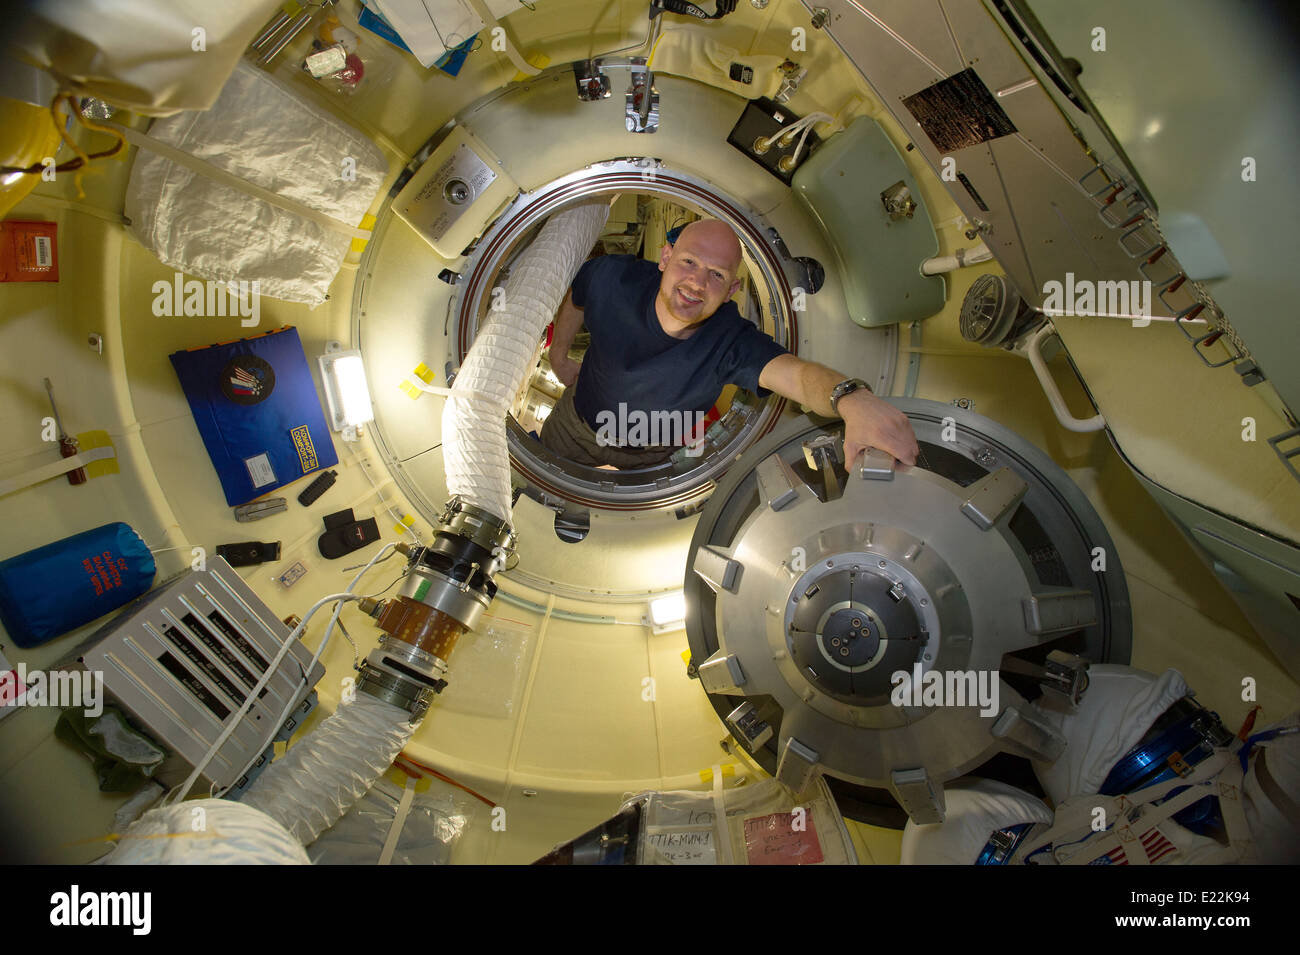 Agenzia spaziale europea astronauta Alexander Gerst, Expedition 40 tecnico di volo, in Rassvet Mini-Research Modulo 1 berlina della Stazione Spaziale Internazionale il 6 giugno 2014. Foto Stock